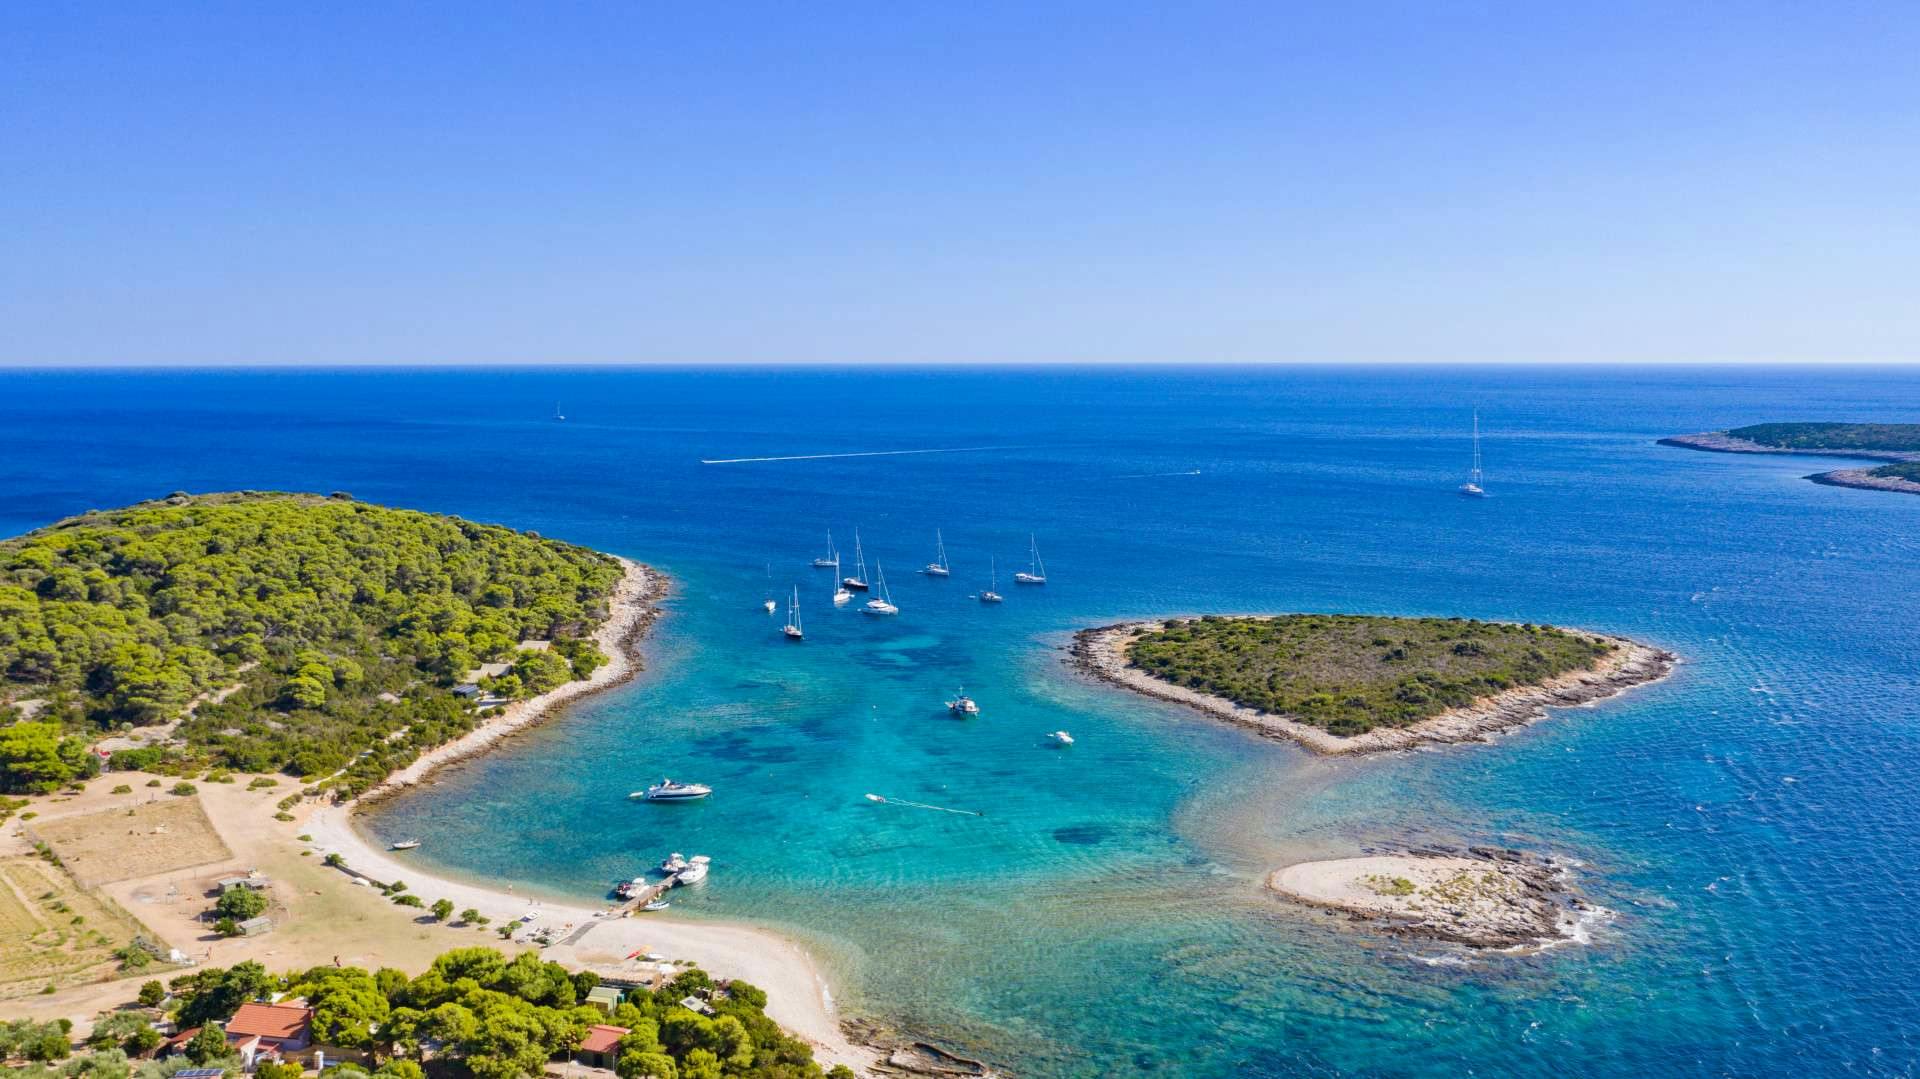 ISOLA DI BUDIKOVAC:

Questa splendida baia turchese è la nostra sosta per nuotare dove puoi prendere il sole o nuotare con l'attrezzatura per lo snorkeling.